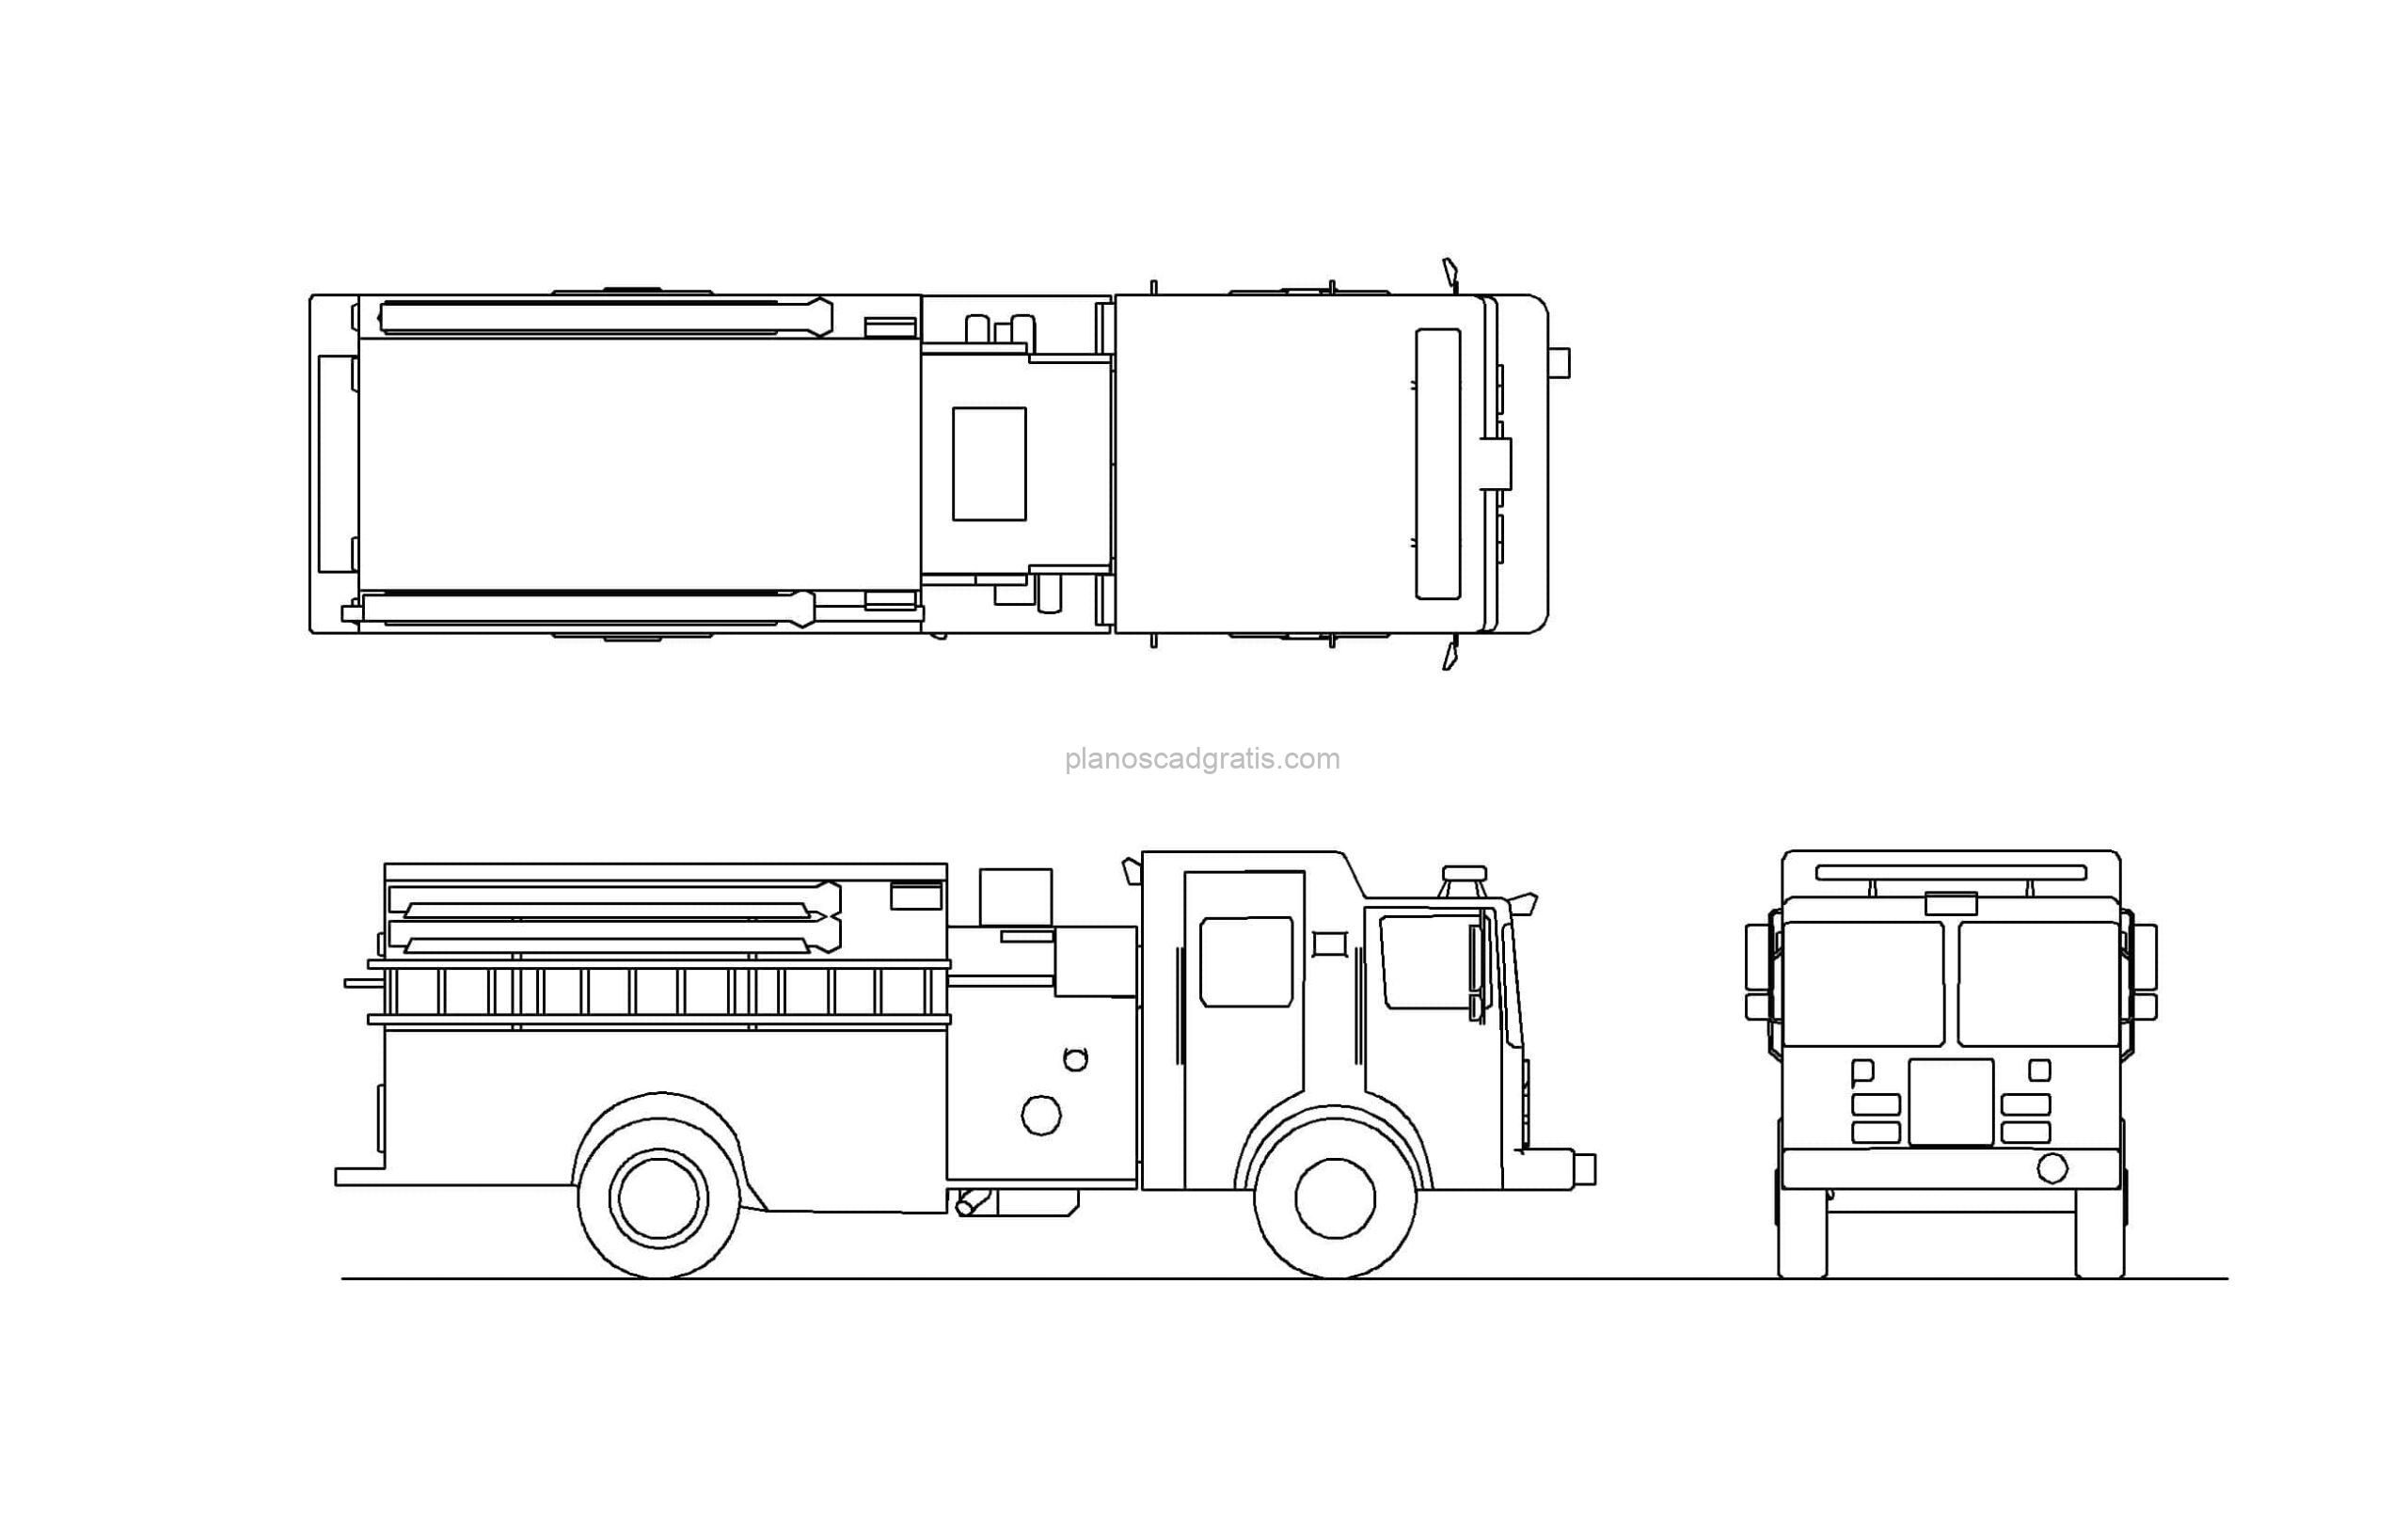 dibujo de autocad de un camión de bombero, vistas en planta y elevaciones para descarga gratis en formato dwg de autocad